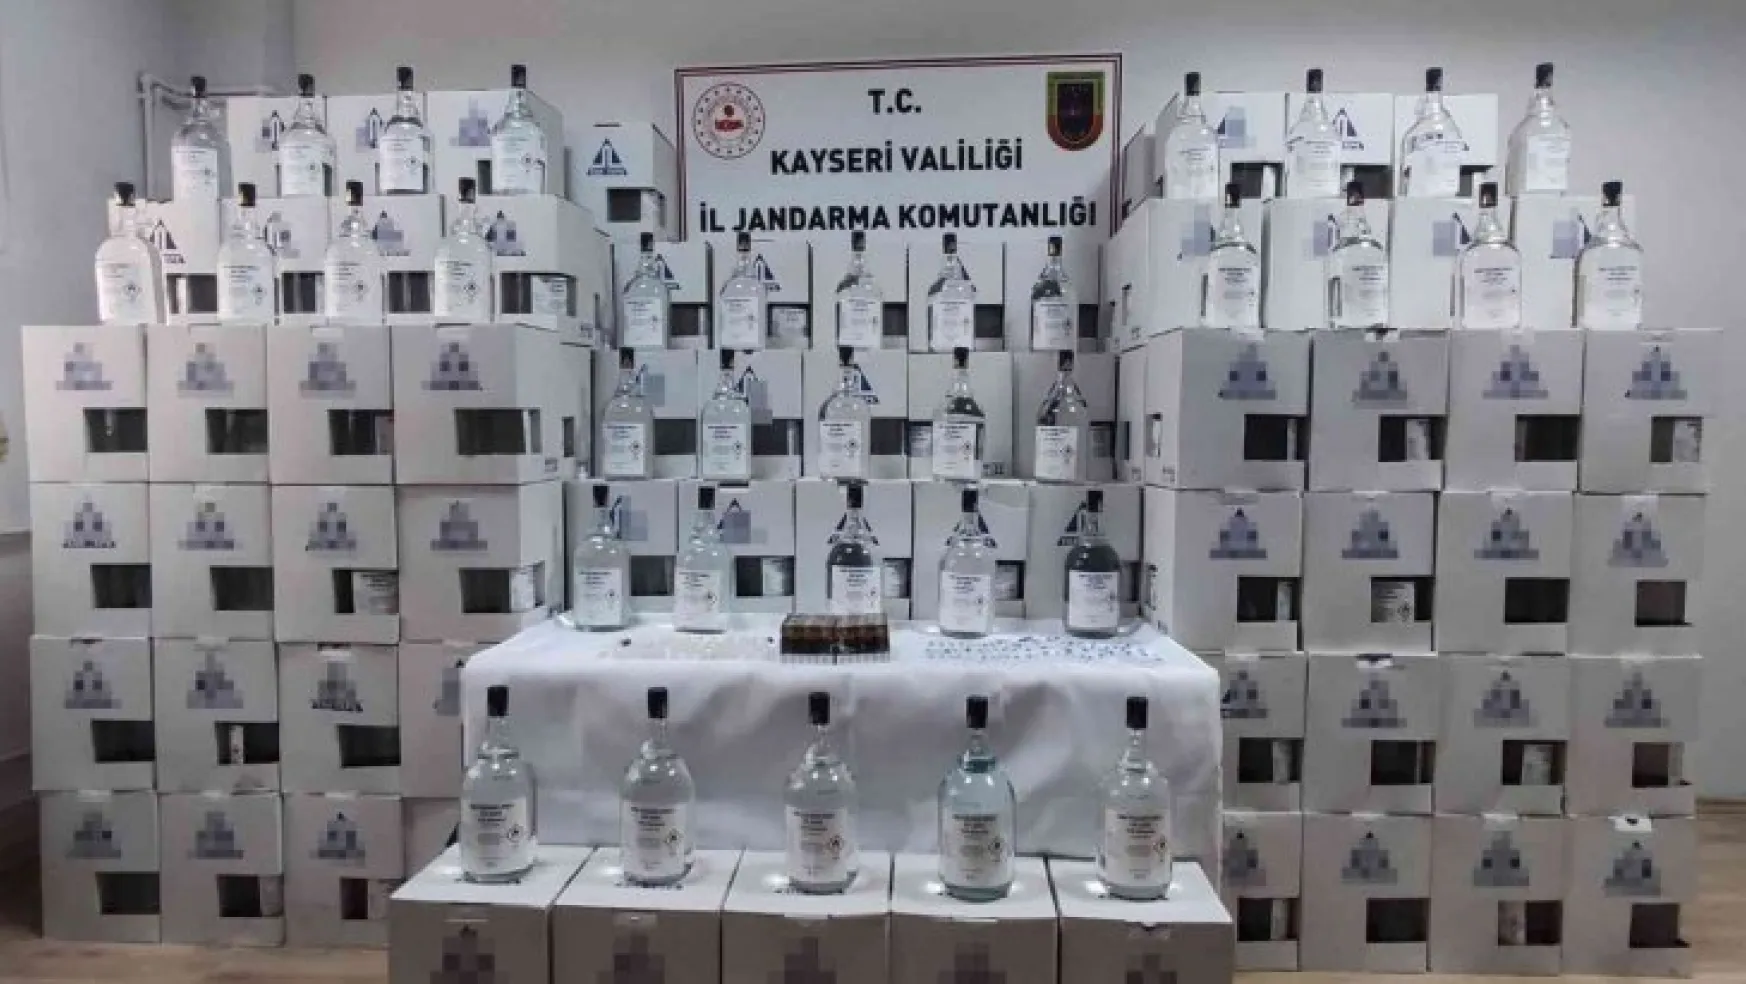 Kayseri'de öldüren içki operasyonu: 2 ton 68 kilogram etil alkol ele geçirildi